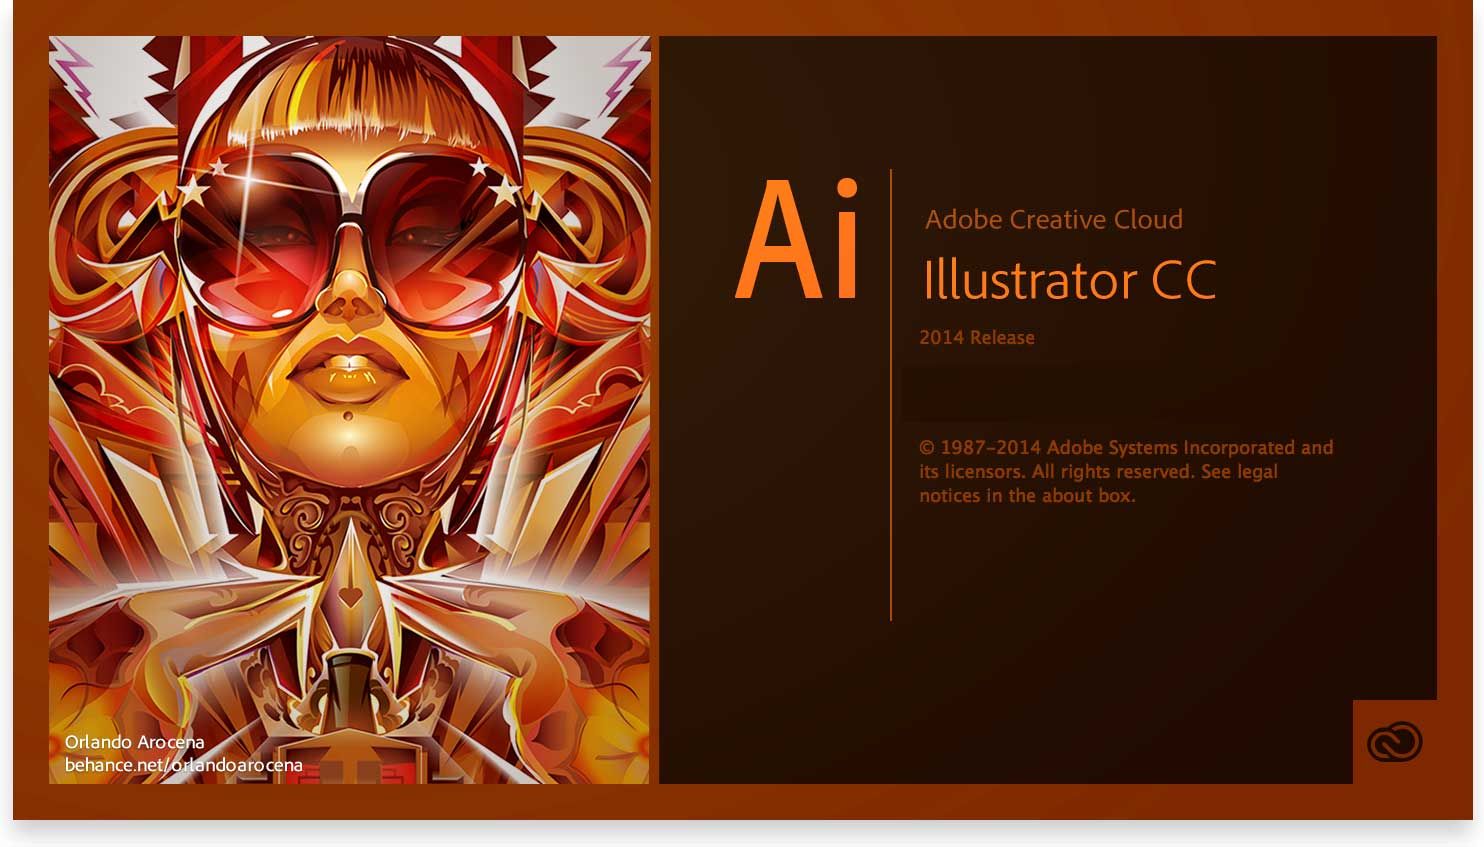 Adobe illustrator mang đến sự sáng tạo không giới hạn cho các nghệ sĩ đồ họa